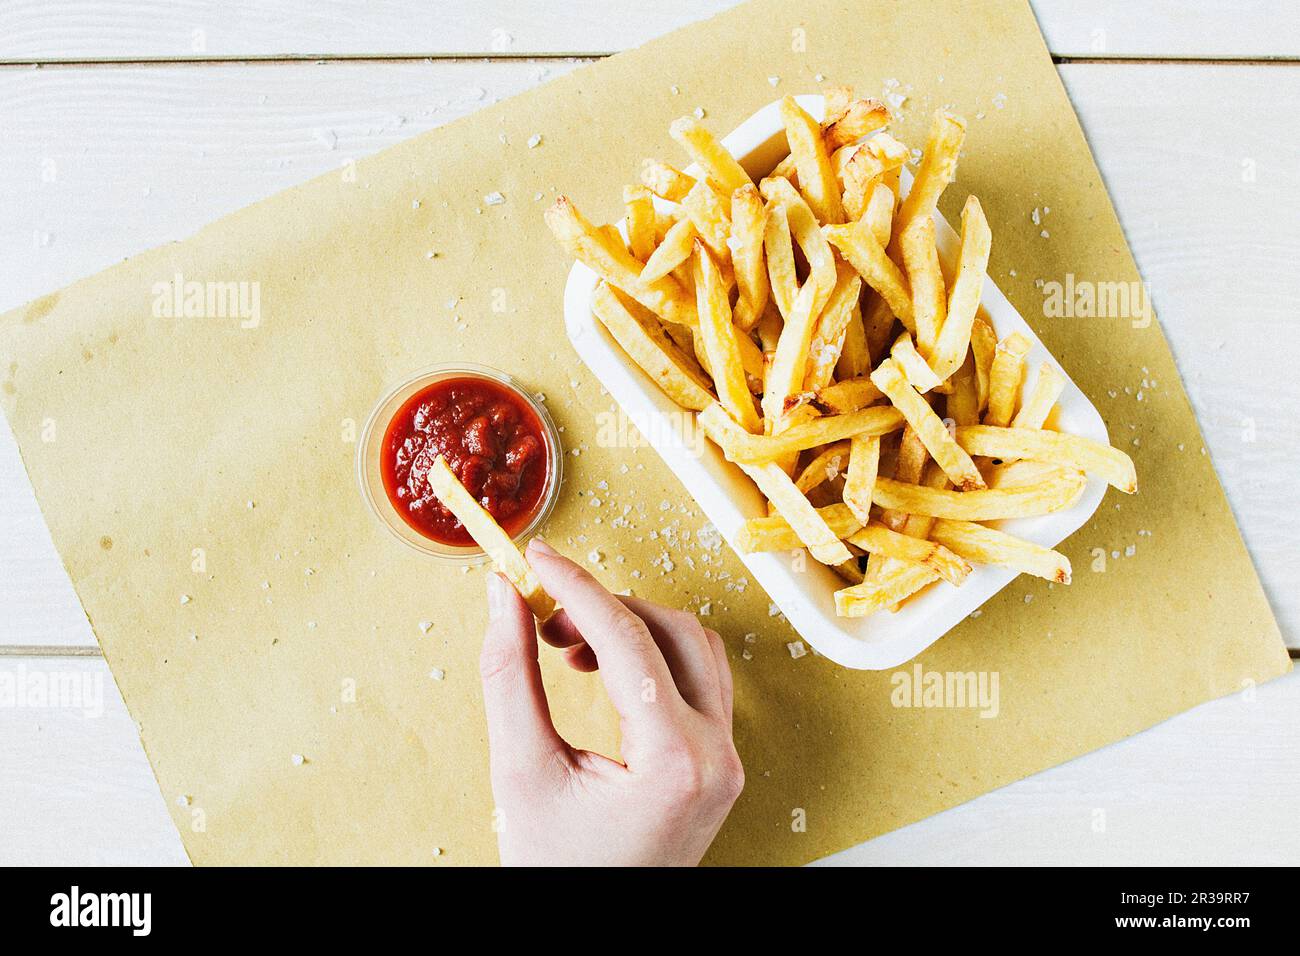 Una porzione di patatine fritte con sale marino, con una mano immersione in ketchup Foto Stock